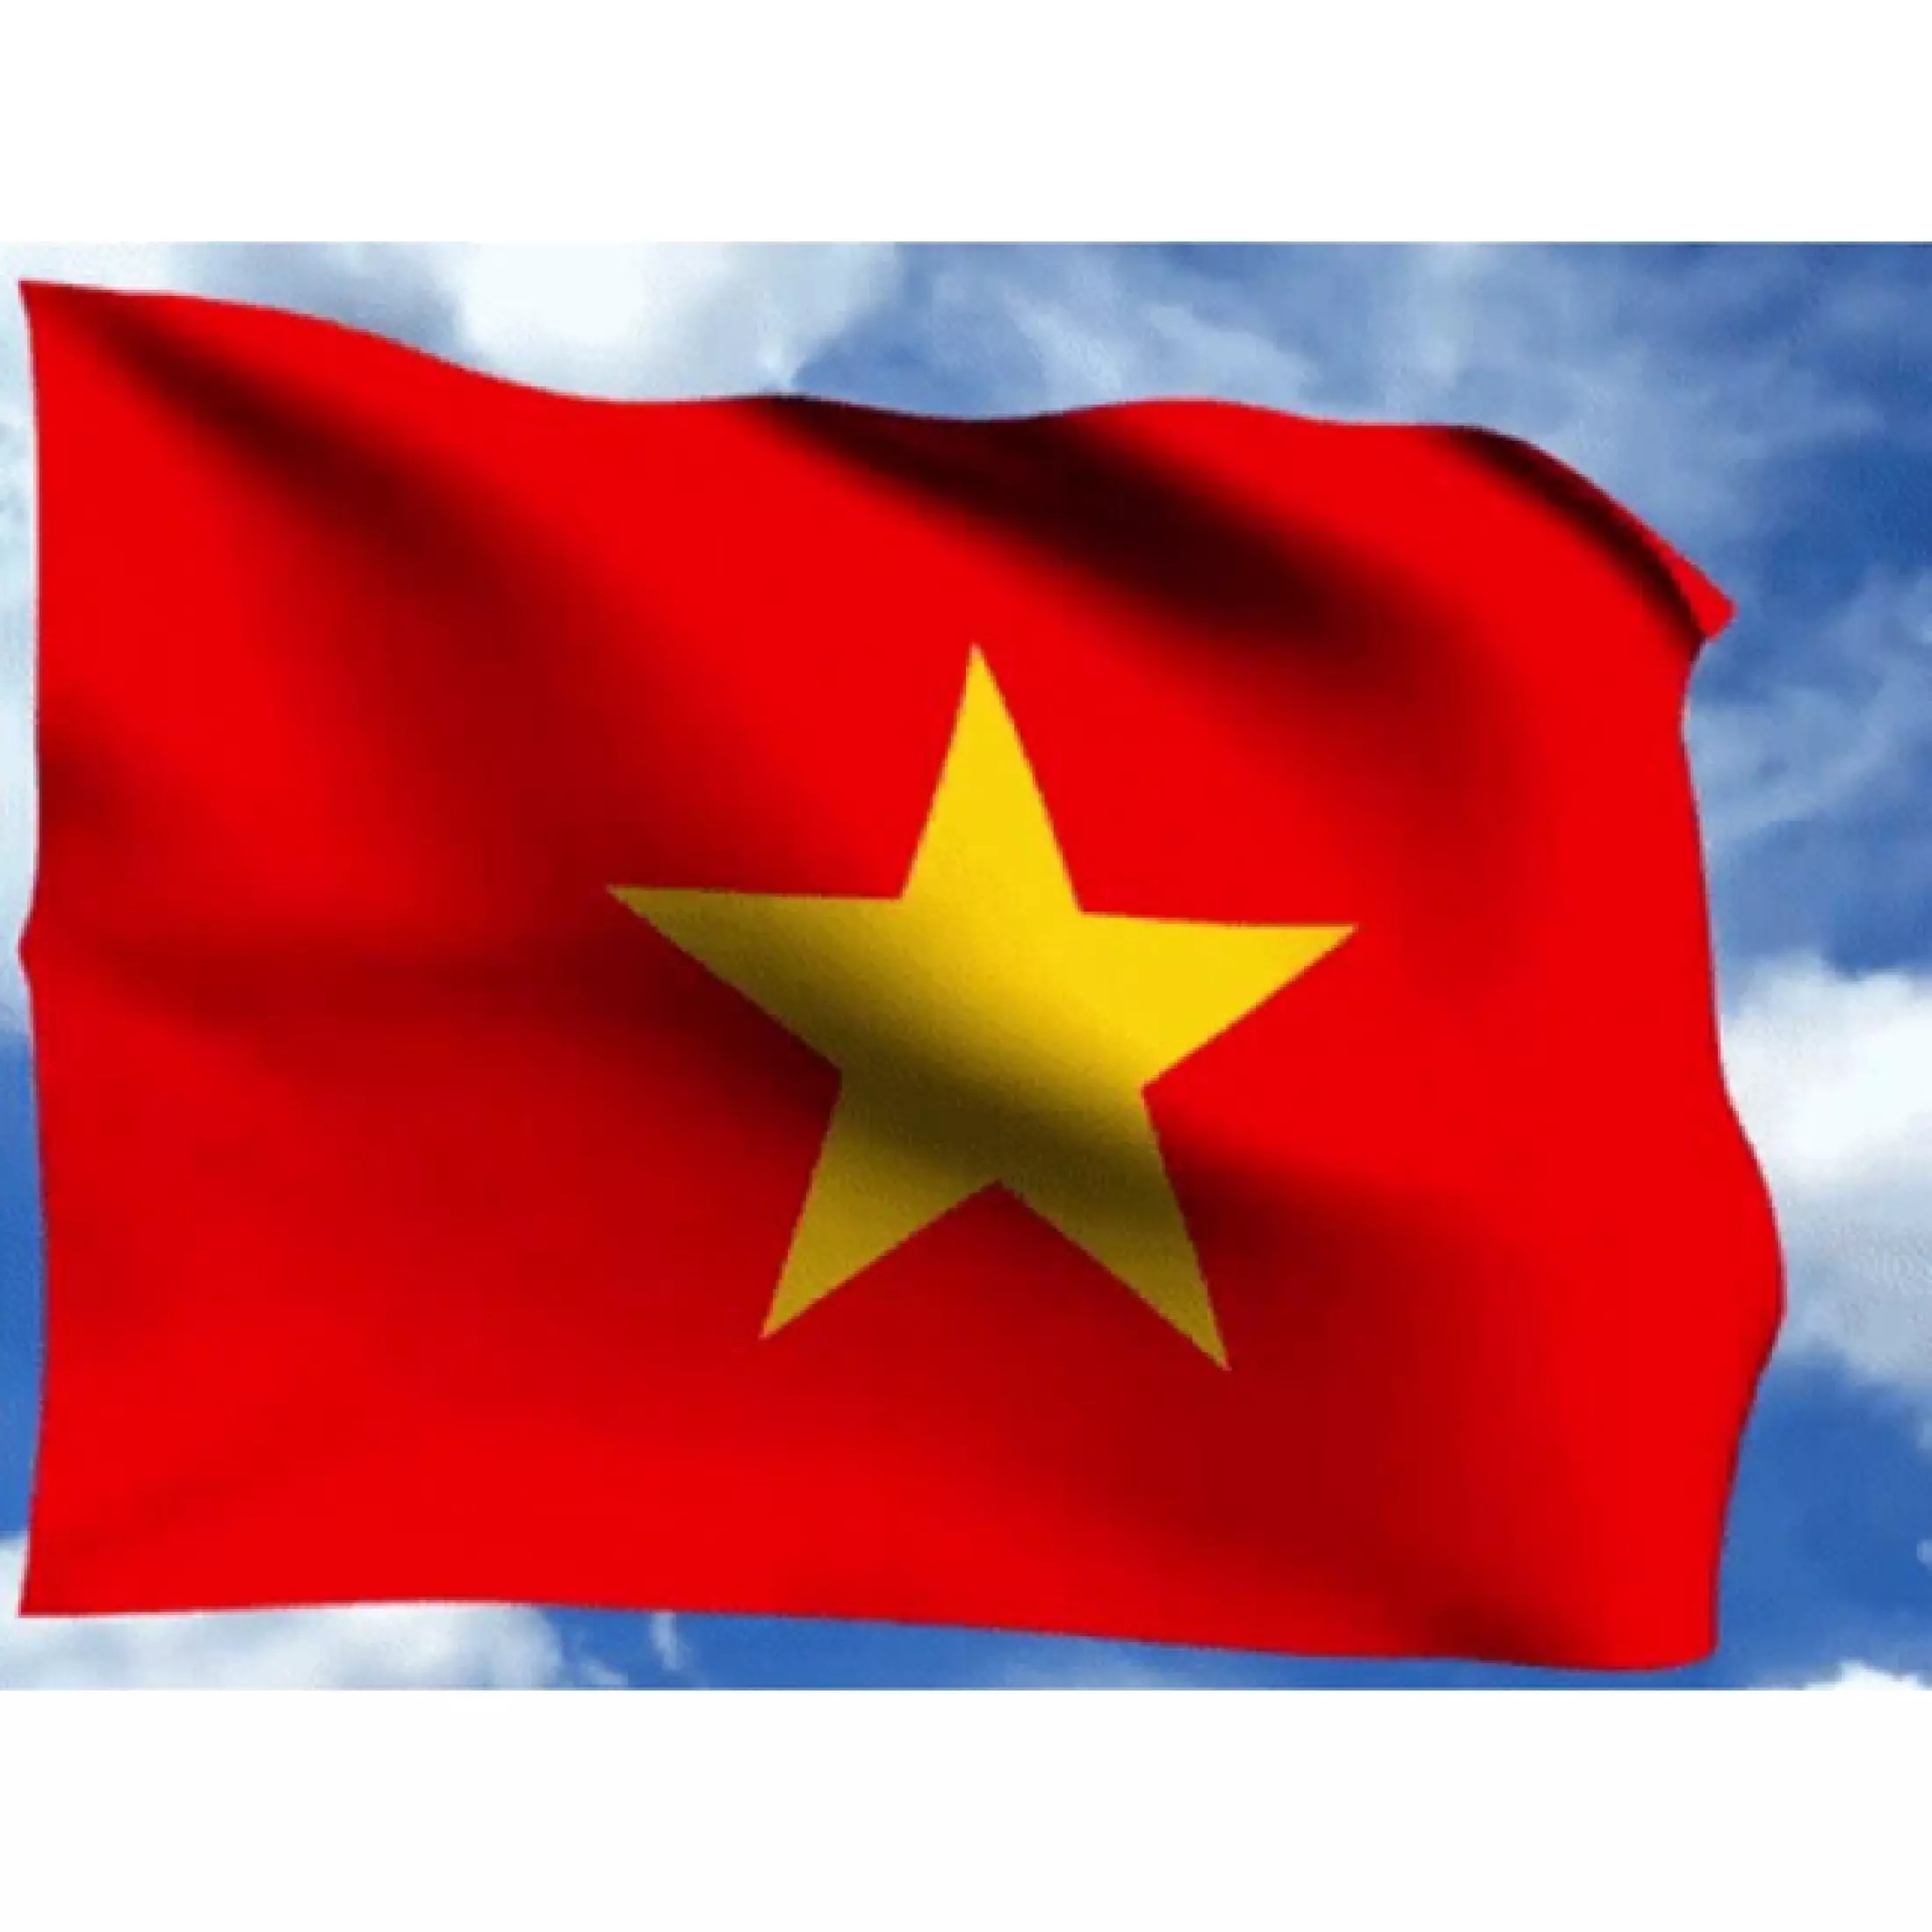 Combo cờ Tổ quốc vải Sa Tanh: Combo cờ Tổ quốc vải Sa Tanh là một sản phẩm tinh tế và độc đáo, được kết hợp giữa màu sắc của cờ quốc kỳ Việt Nam và những đường nét tinh tế của vải Sa Tanh. Sản phẩm không chỉ mang tính sáng tạo mà còn thể hiện tình yêu đối với đất nước.